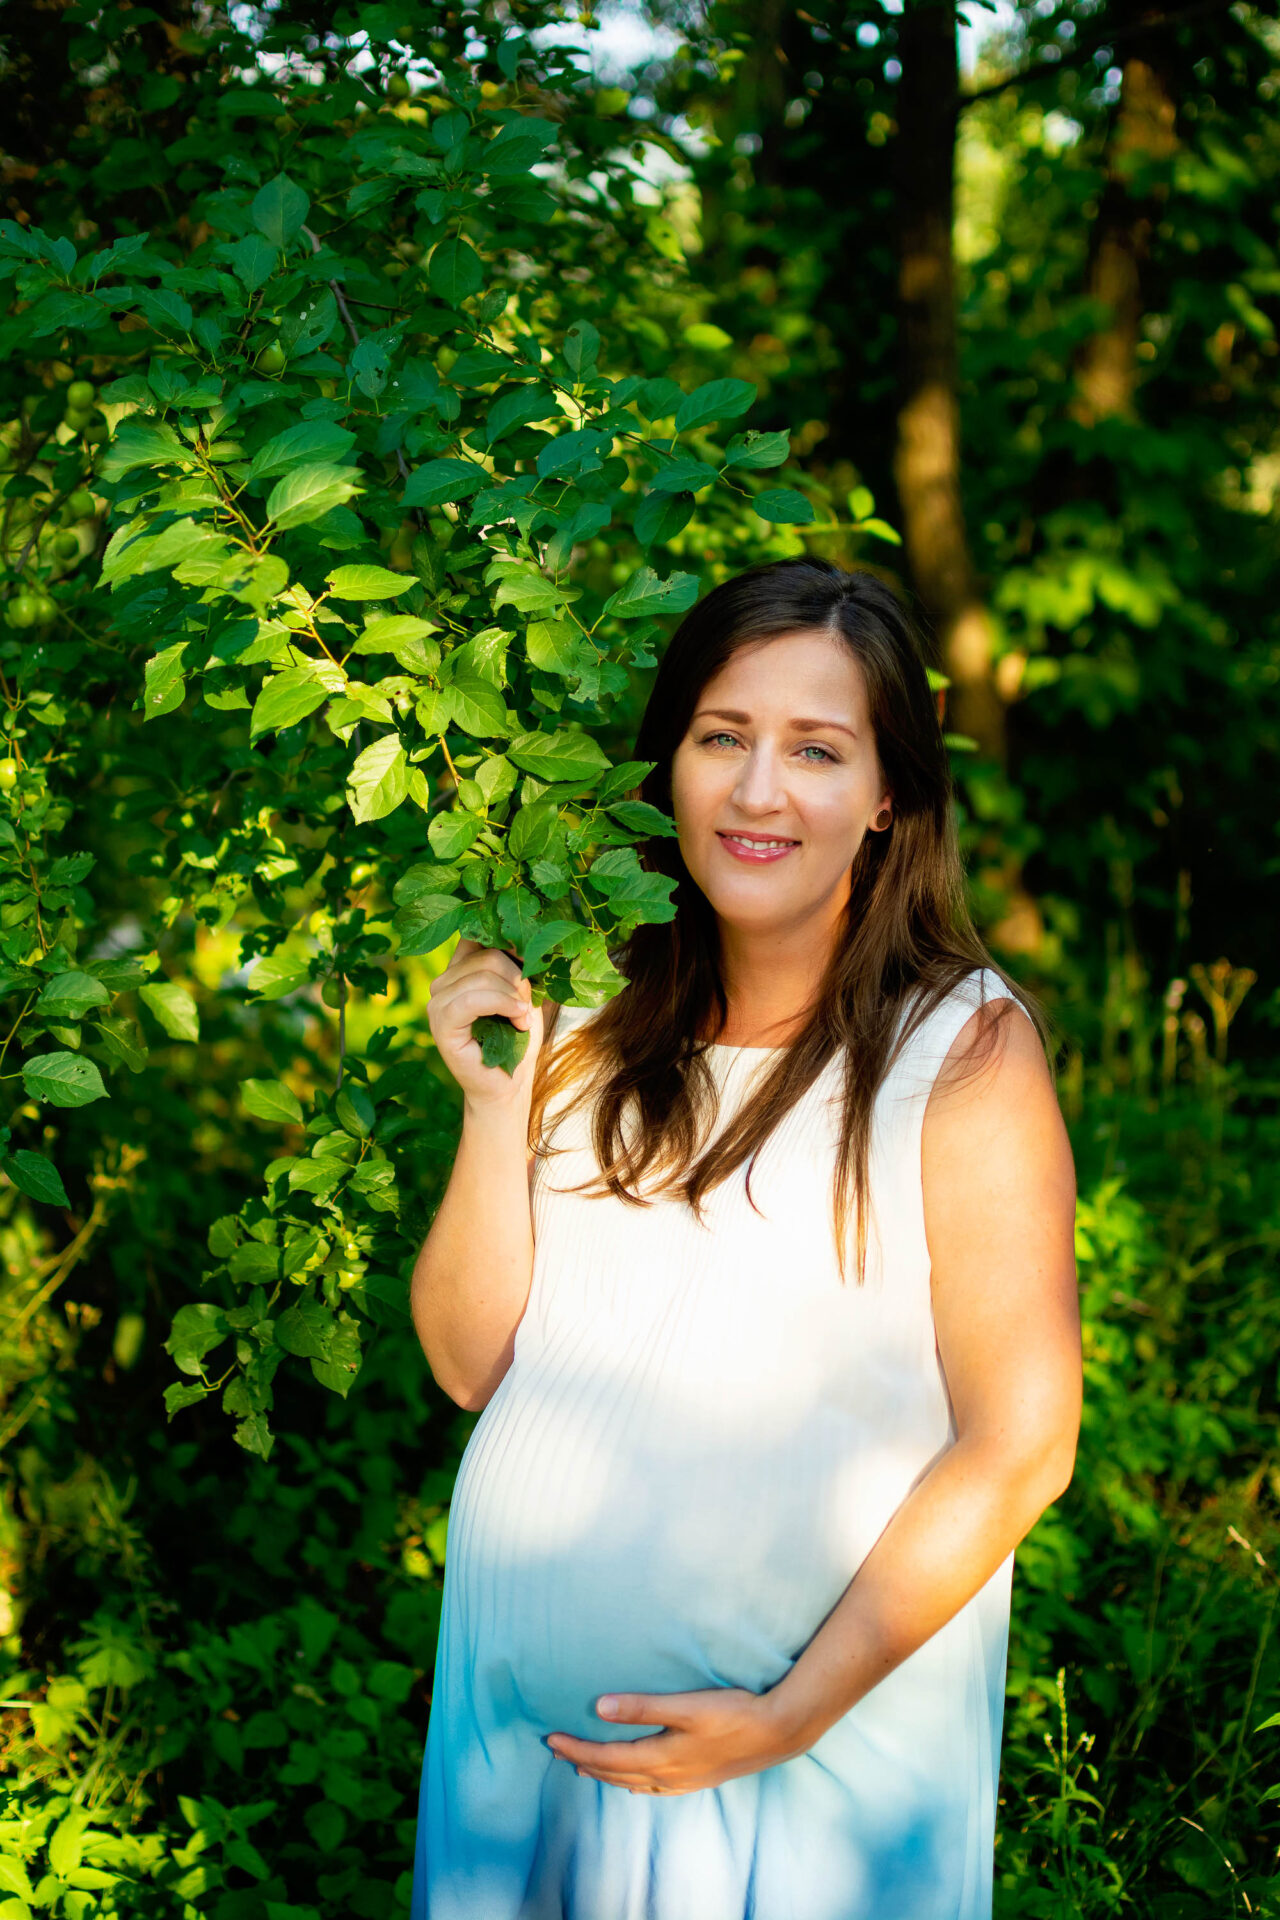 maternity photography in zilina slovakia